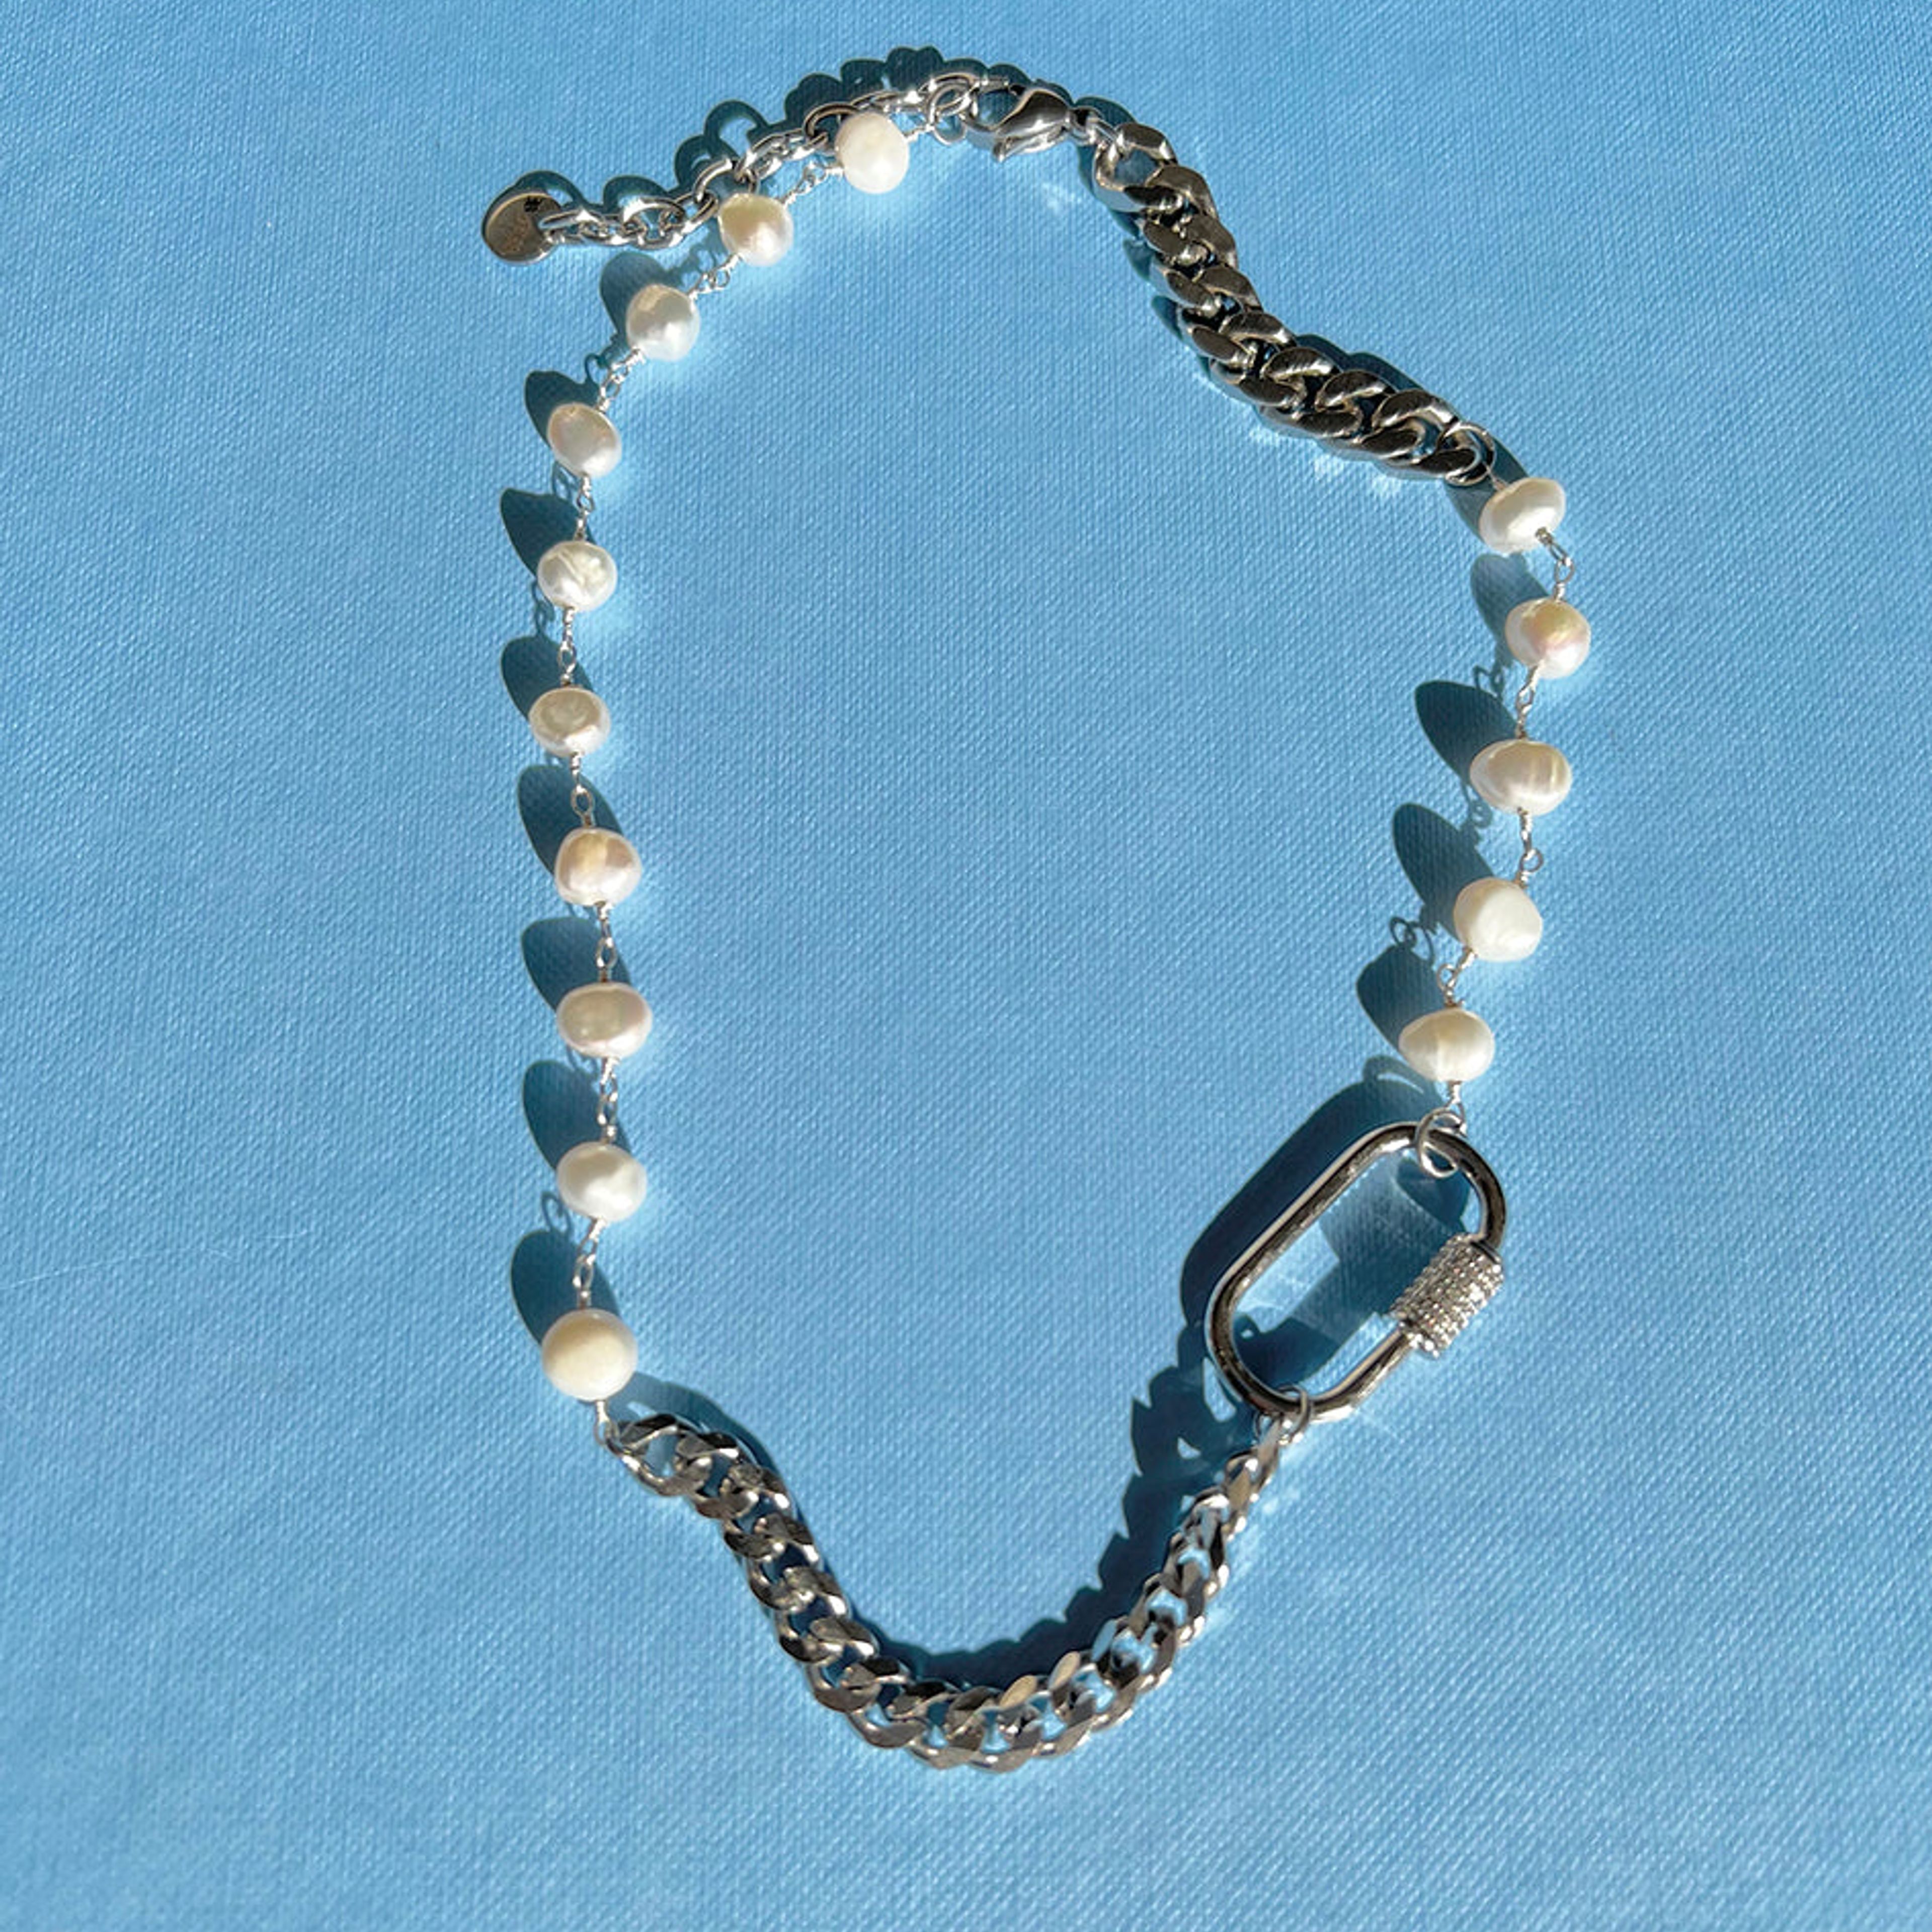 The Iungo Rosary Chain